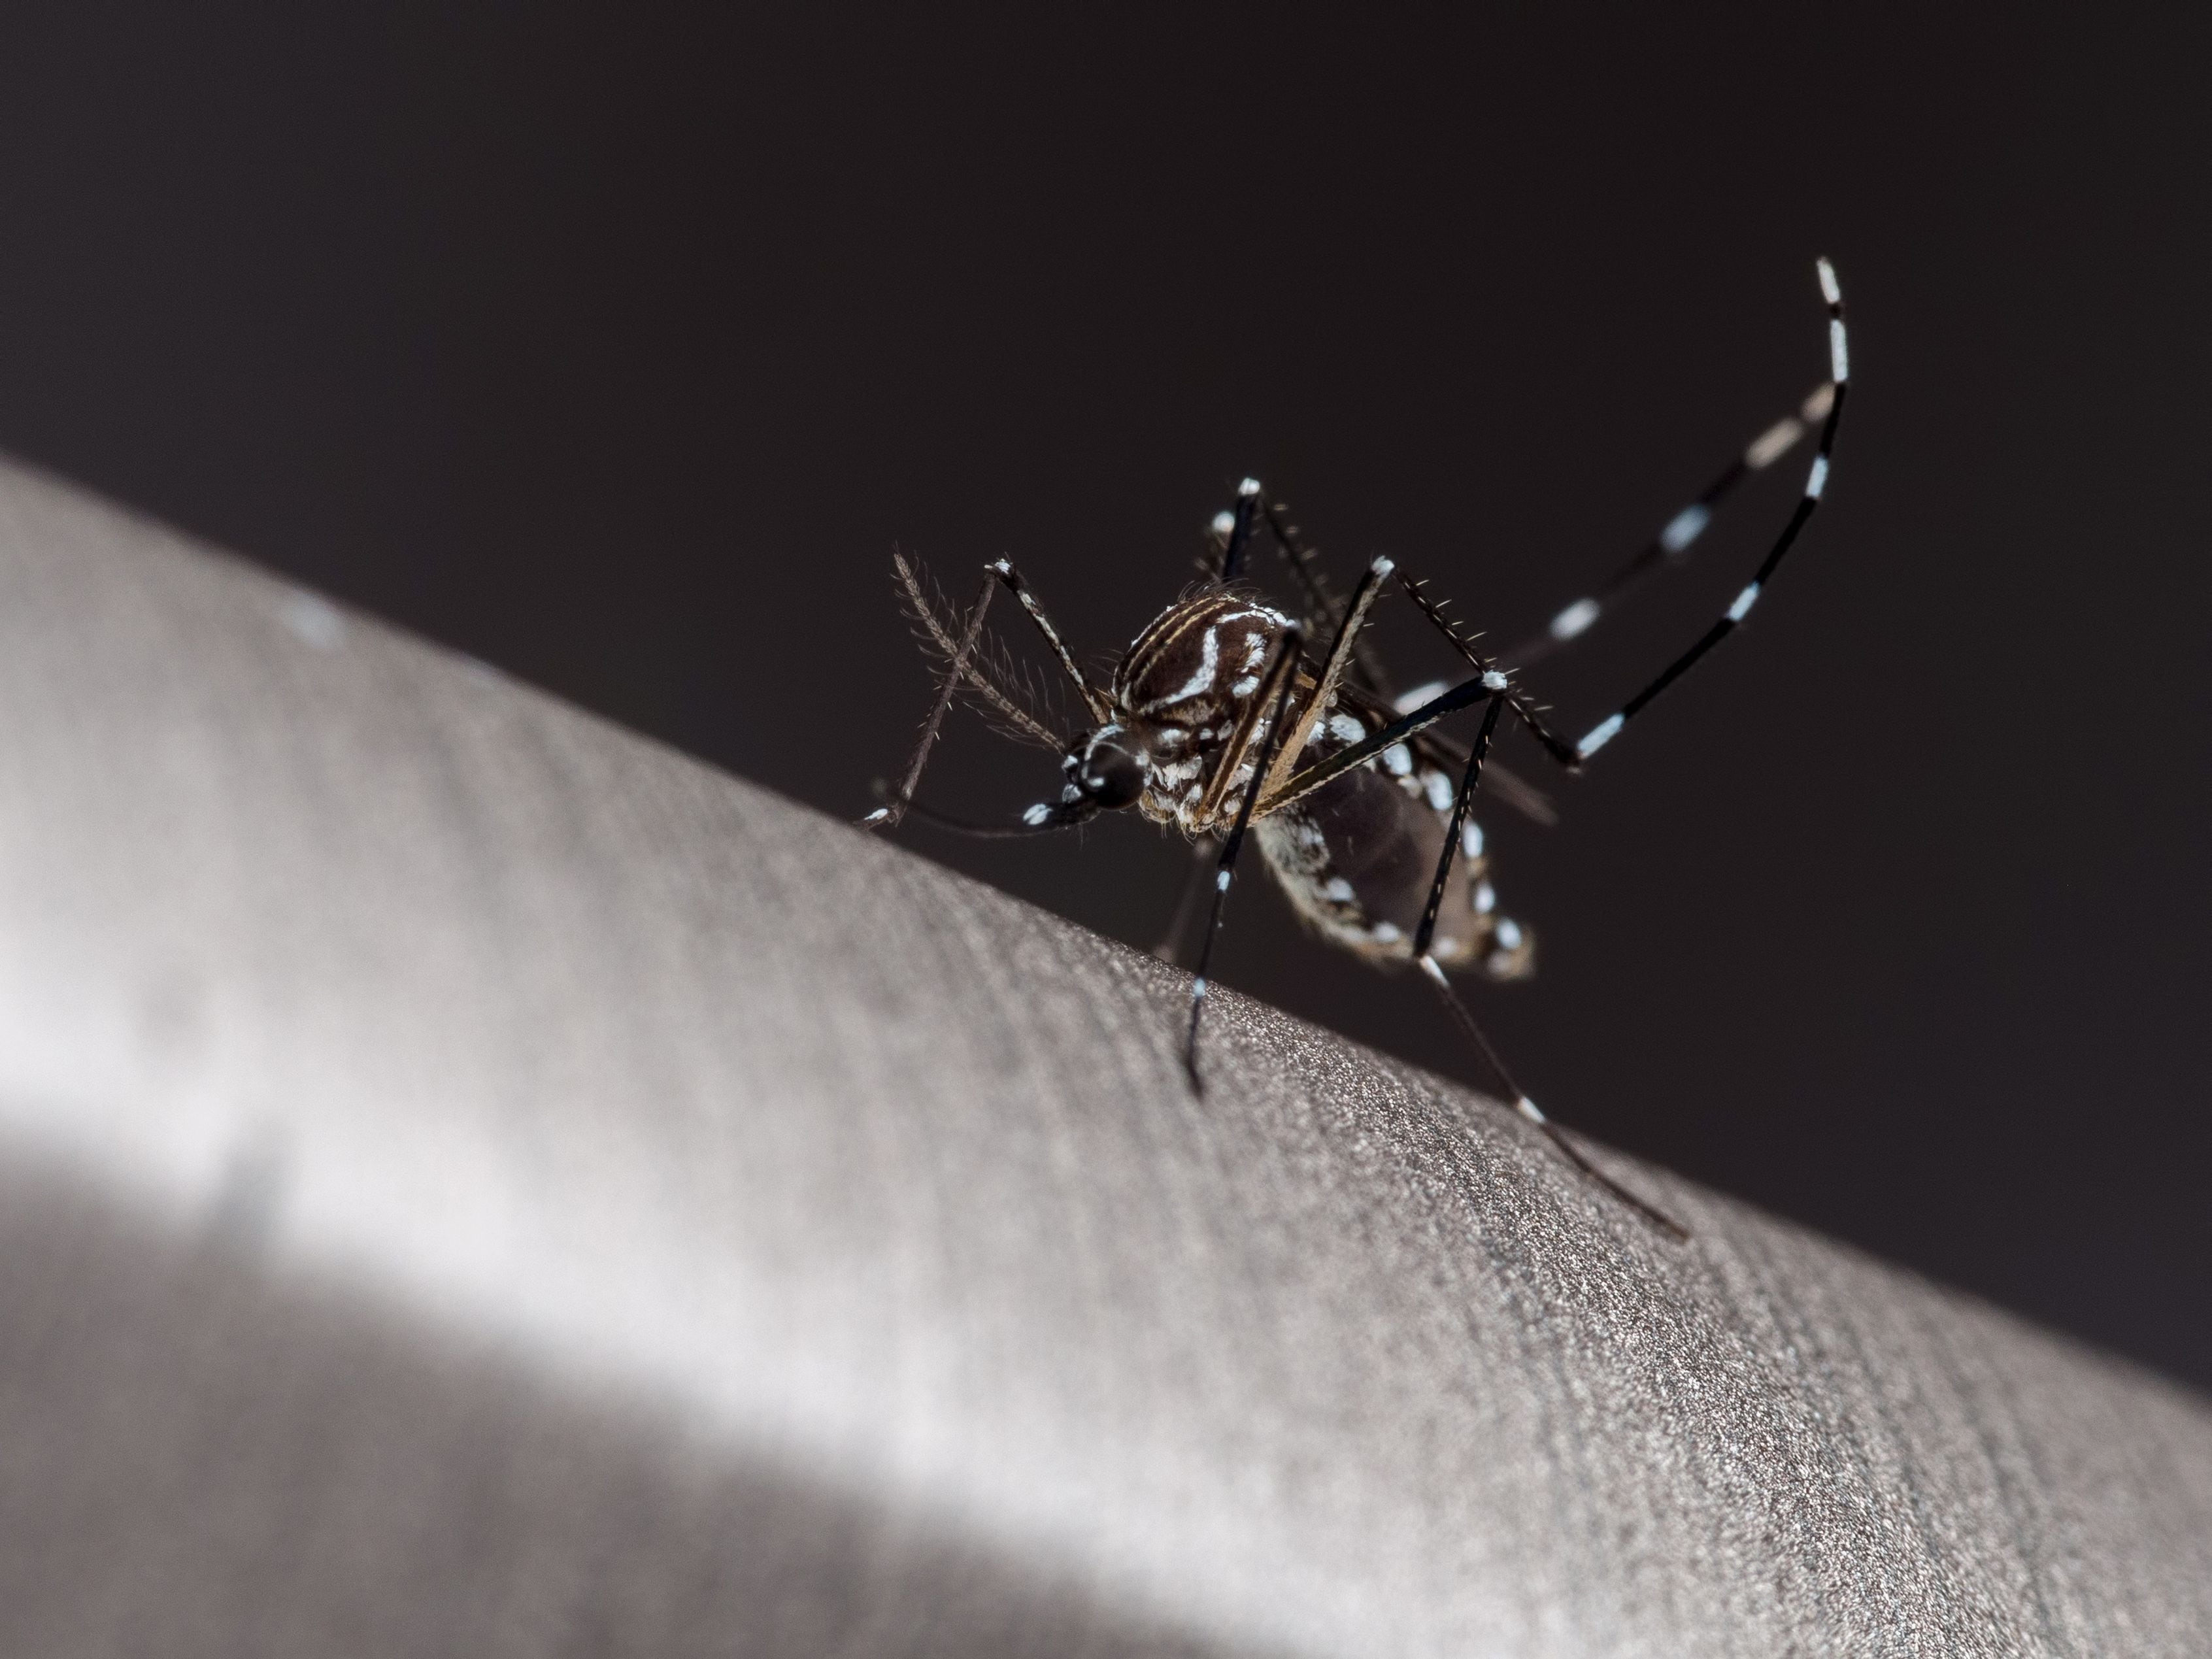 chile suma 179 casos de dengue, la mayoría importados, pero descubre al mosquito transmisor en su zona central